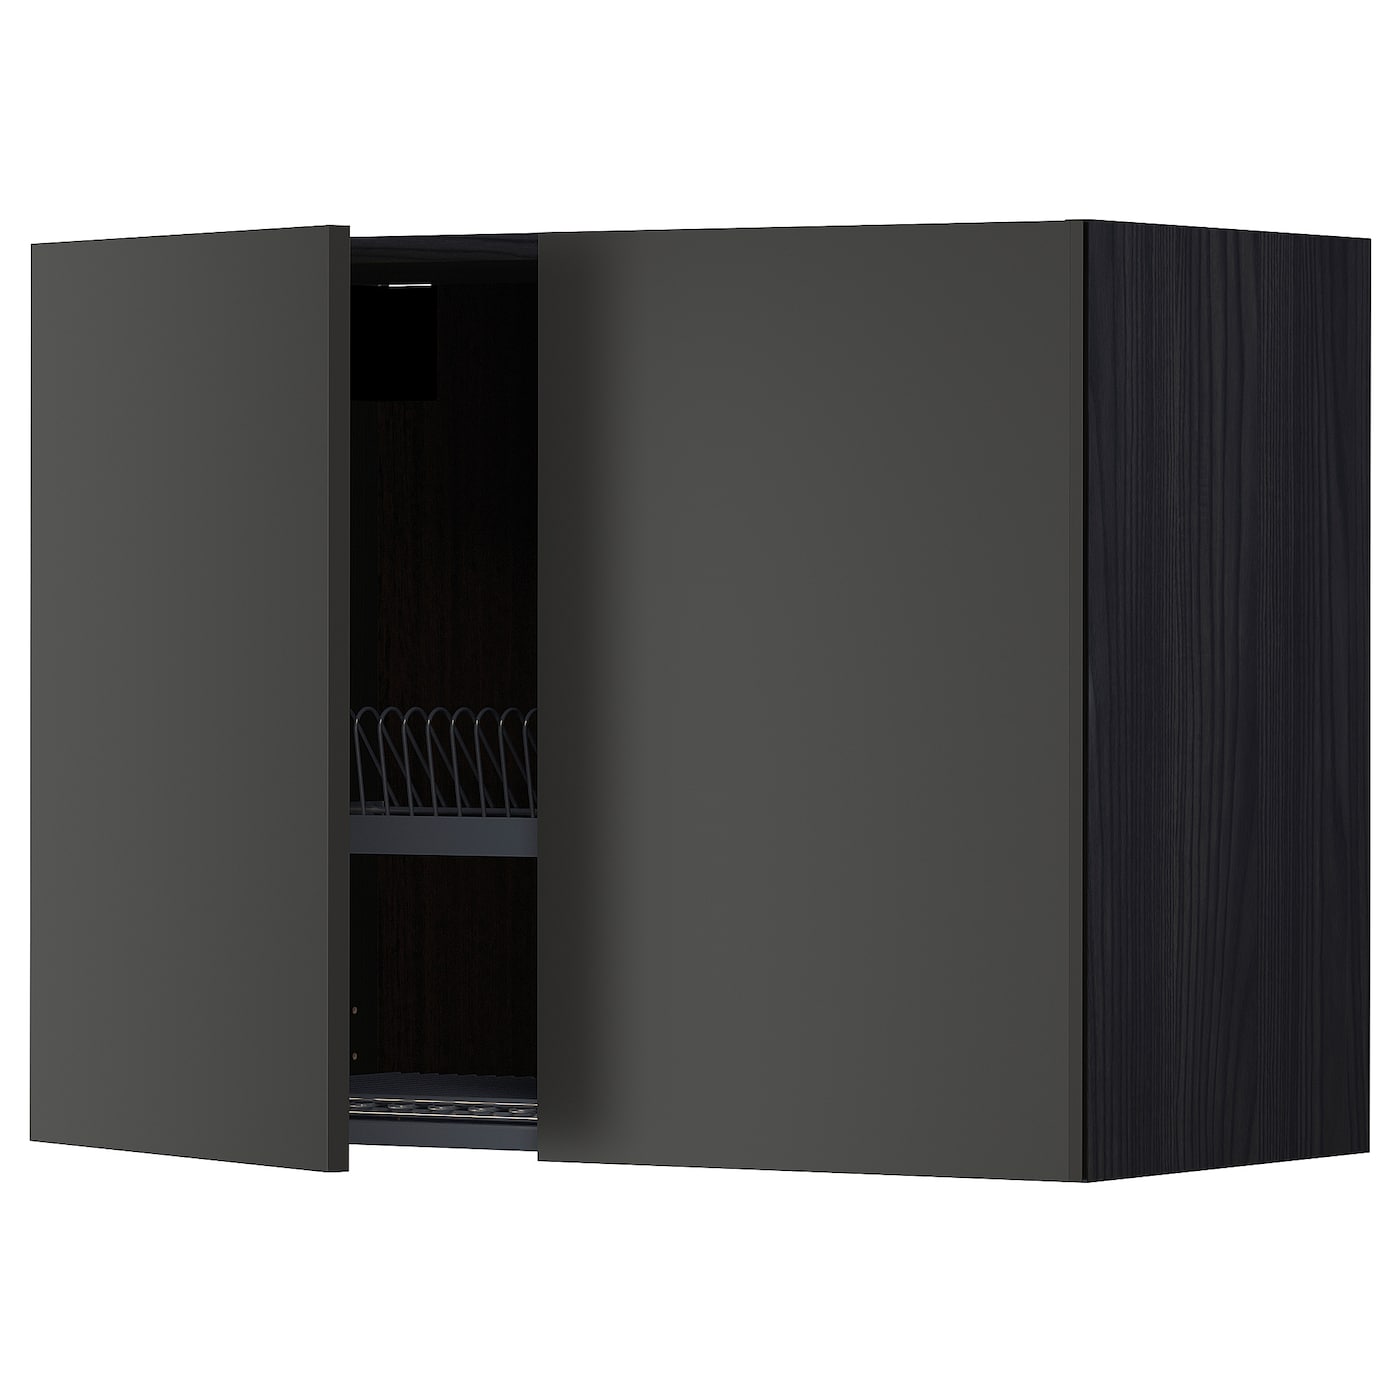 Навесной шкаф с сушилкой - METOD IKEA/ МЕТОД ИКЕА, 60х80 см, черный